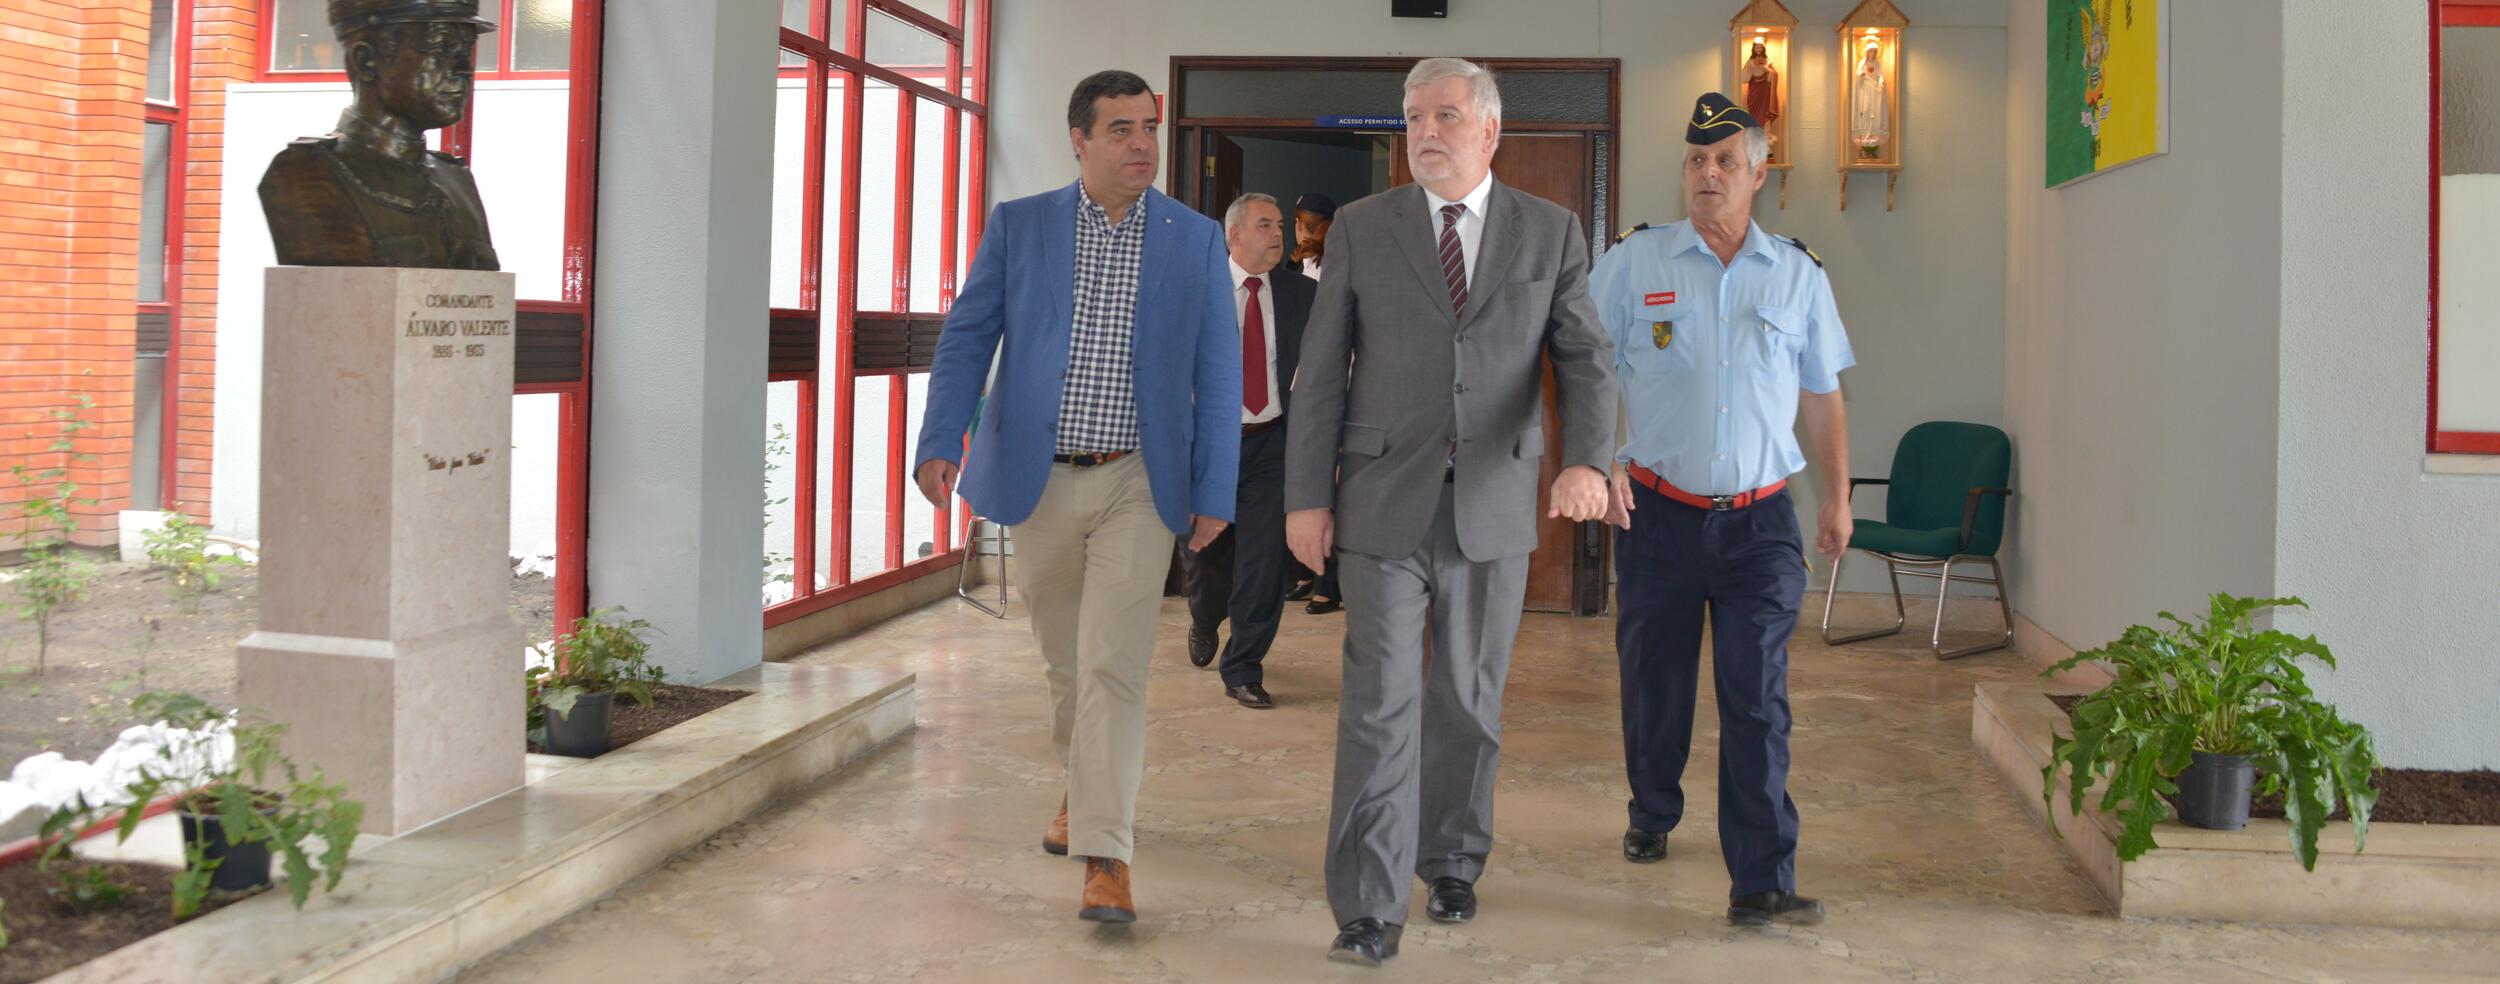 Secretário de Estado da Administração Interna visita Montijo